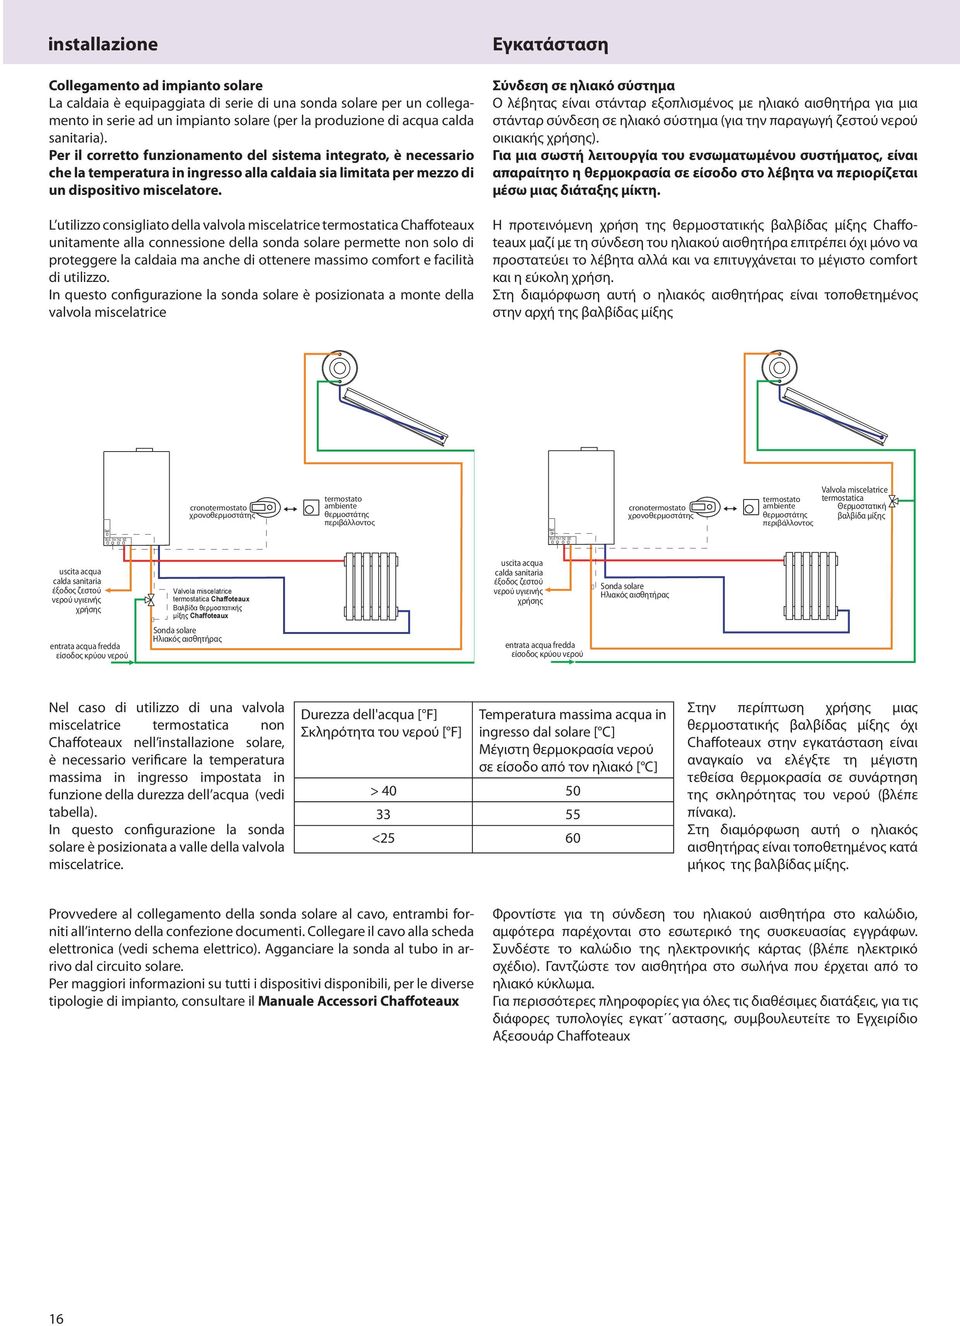 L utilizzo consigliato della valvola miscelatrice termostatica Chaffoteaux unitamente alla connessione della sonda solare permette non solo di proteggere la caldaia ma anche di ottenere massimo